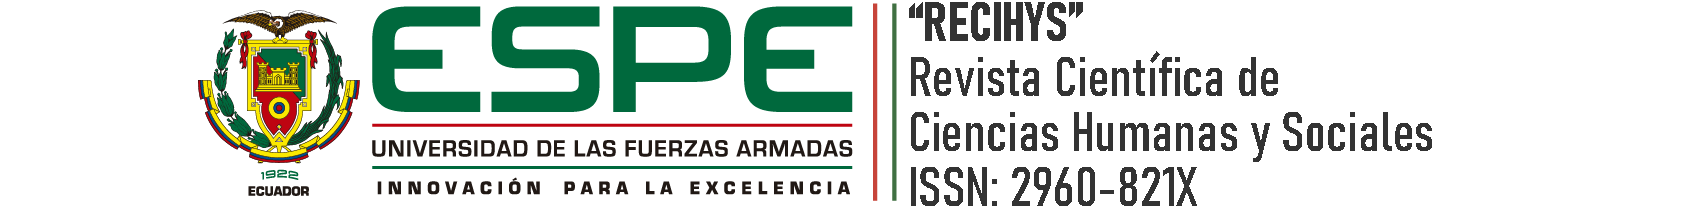 Logo Revista